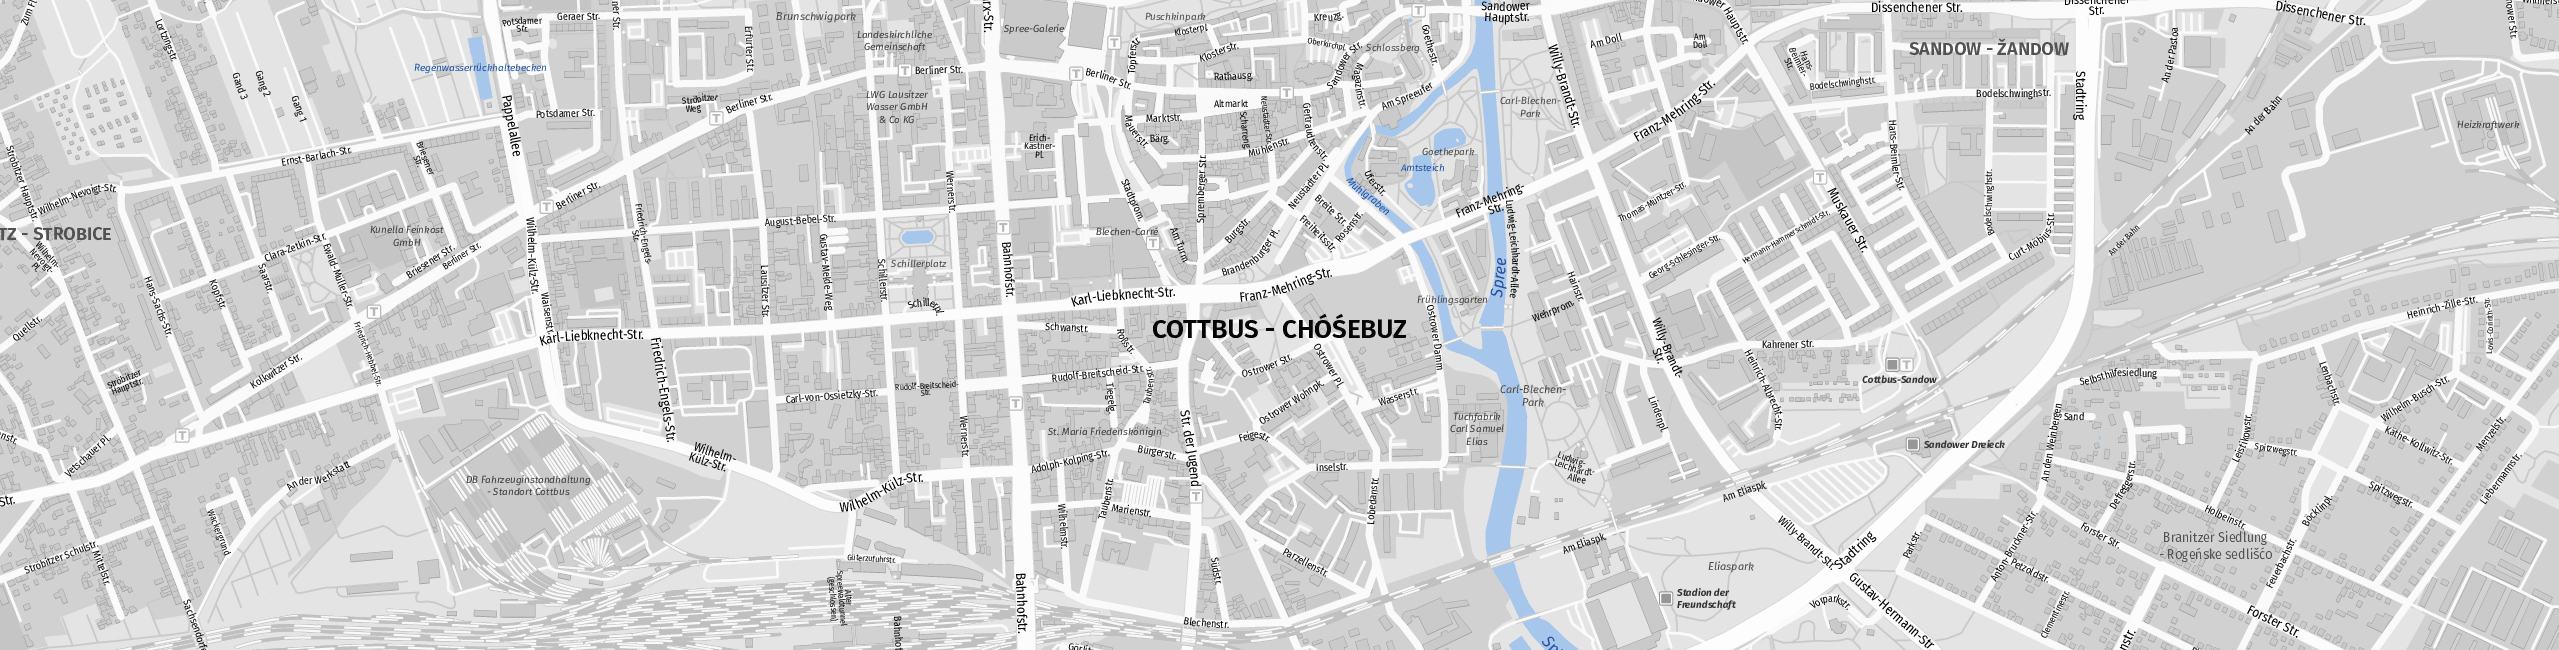 Download Map Cottbus